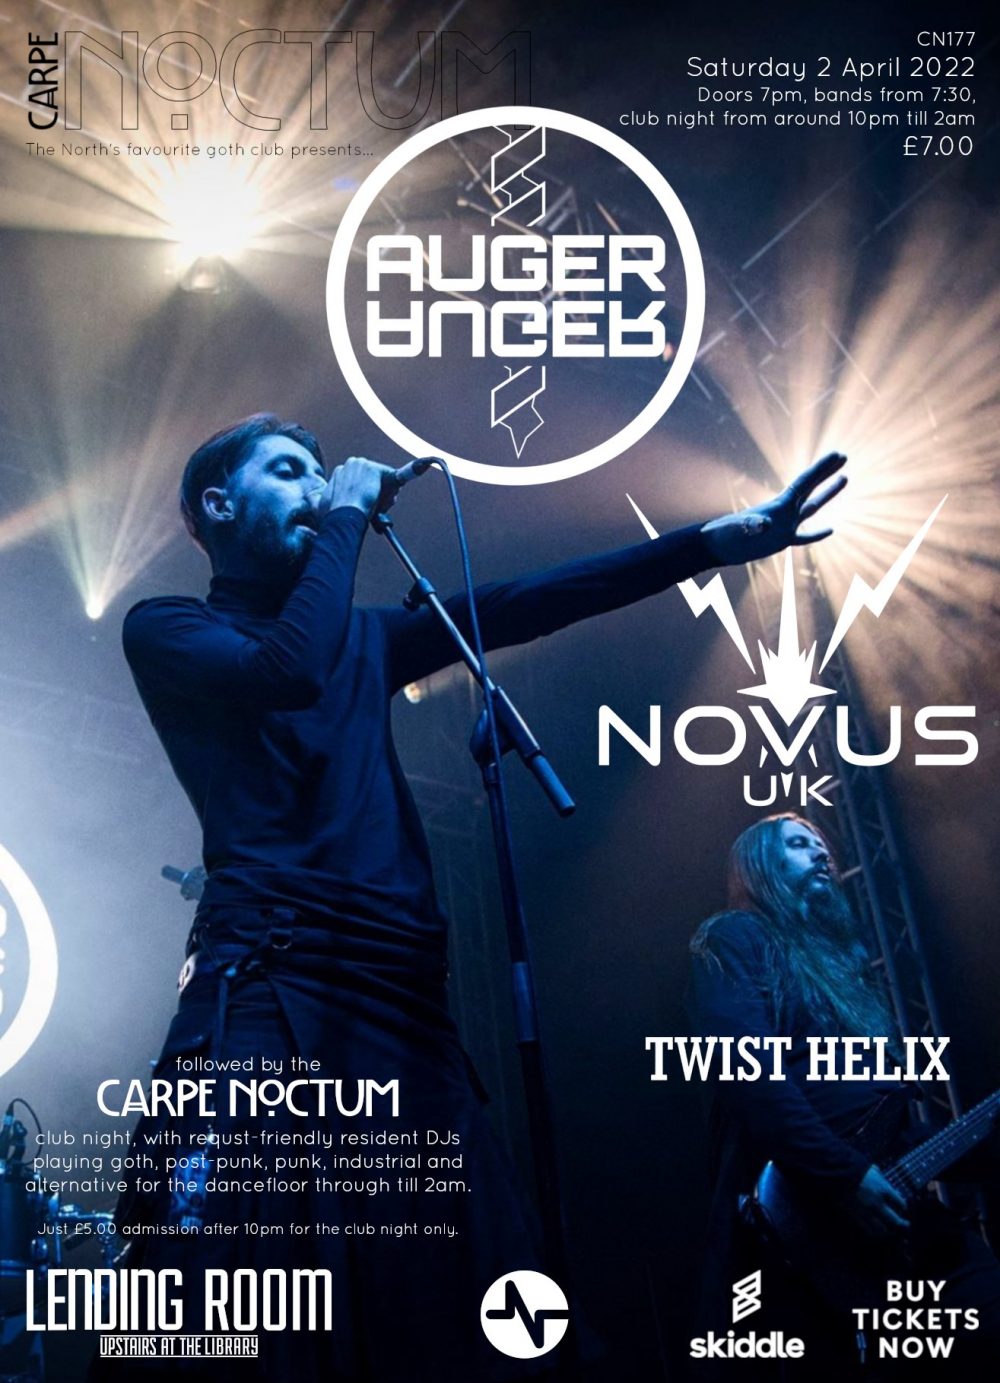 Carpe Noctum: Auger, Novus UK, and Twist Helix